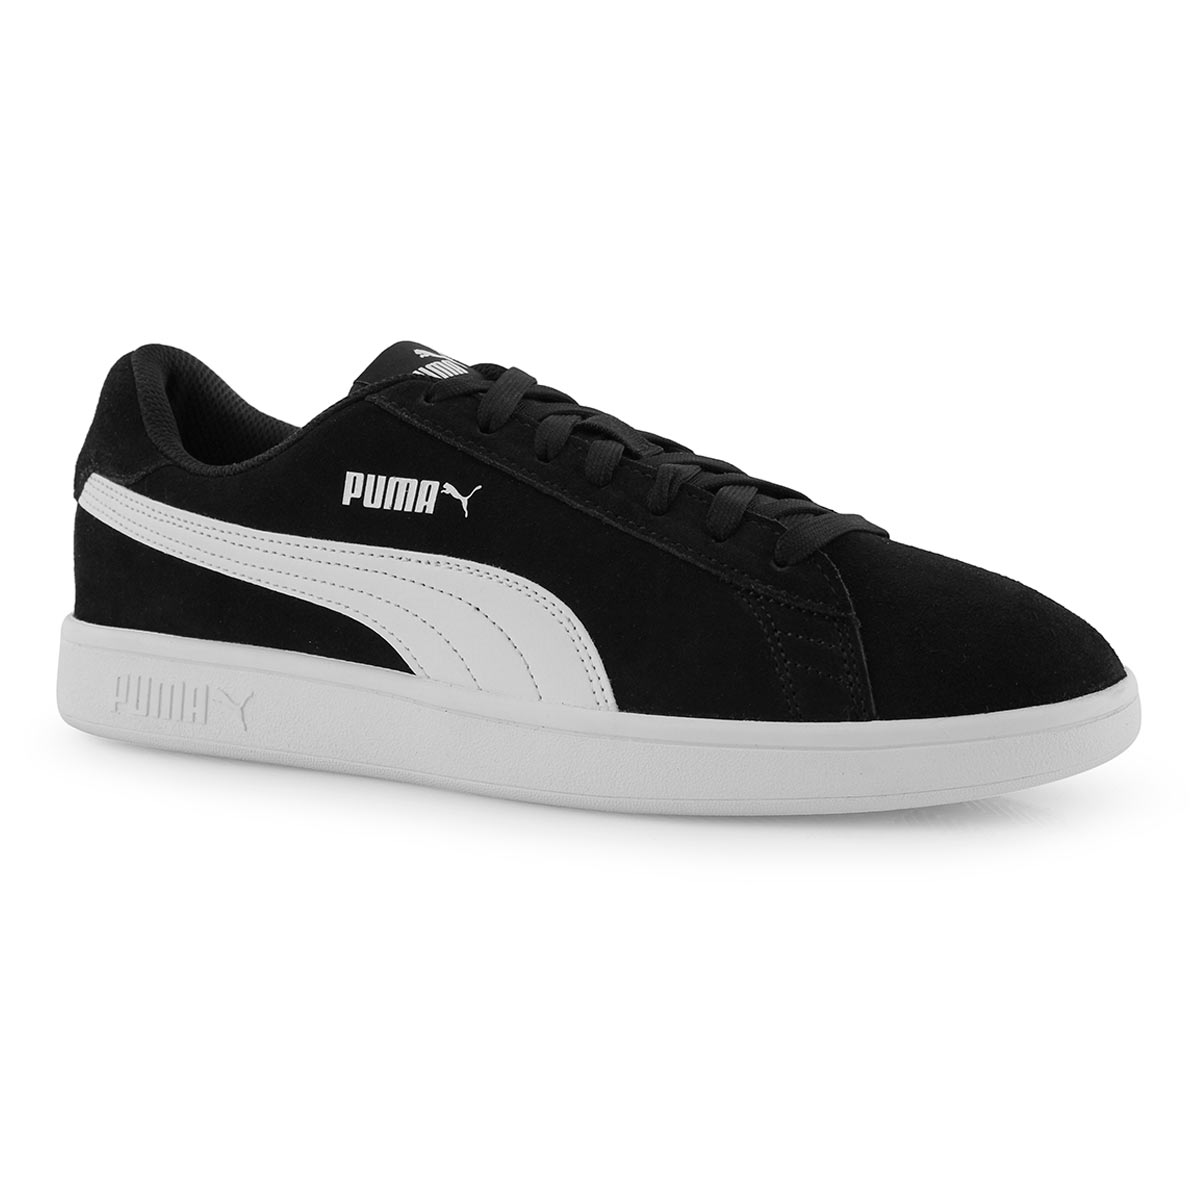 PUMA SMASH v2 black/white sneakers 